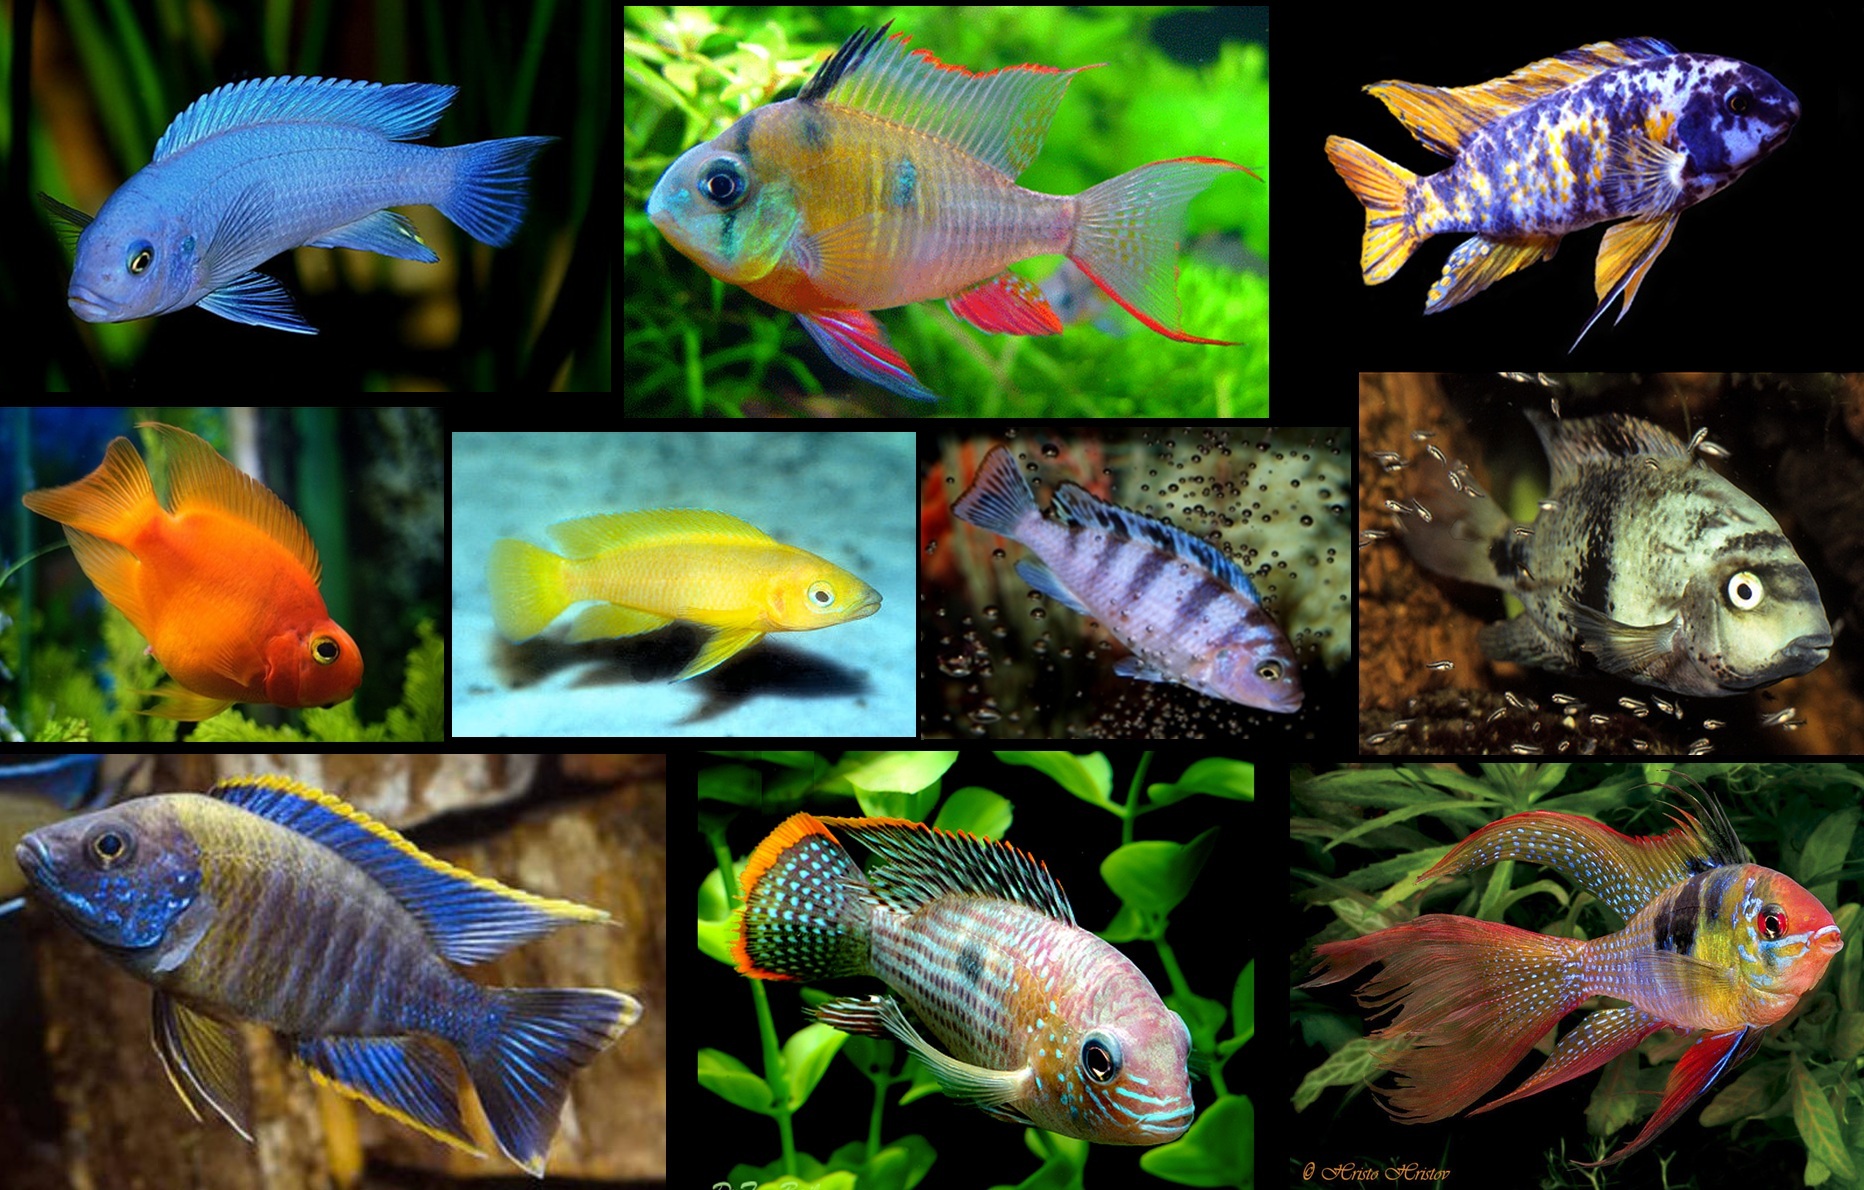 Самые неприхотливые аквариумные рыбки и растения, подходящие для маленьких аквариумов и начинающих аквариумистов